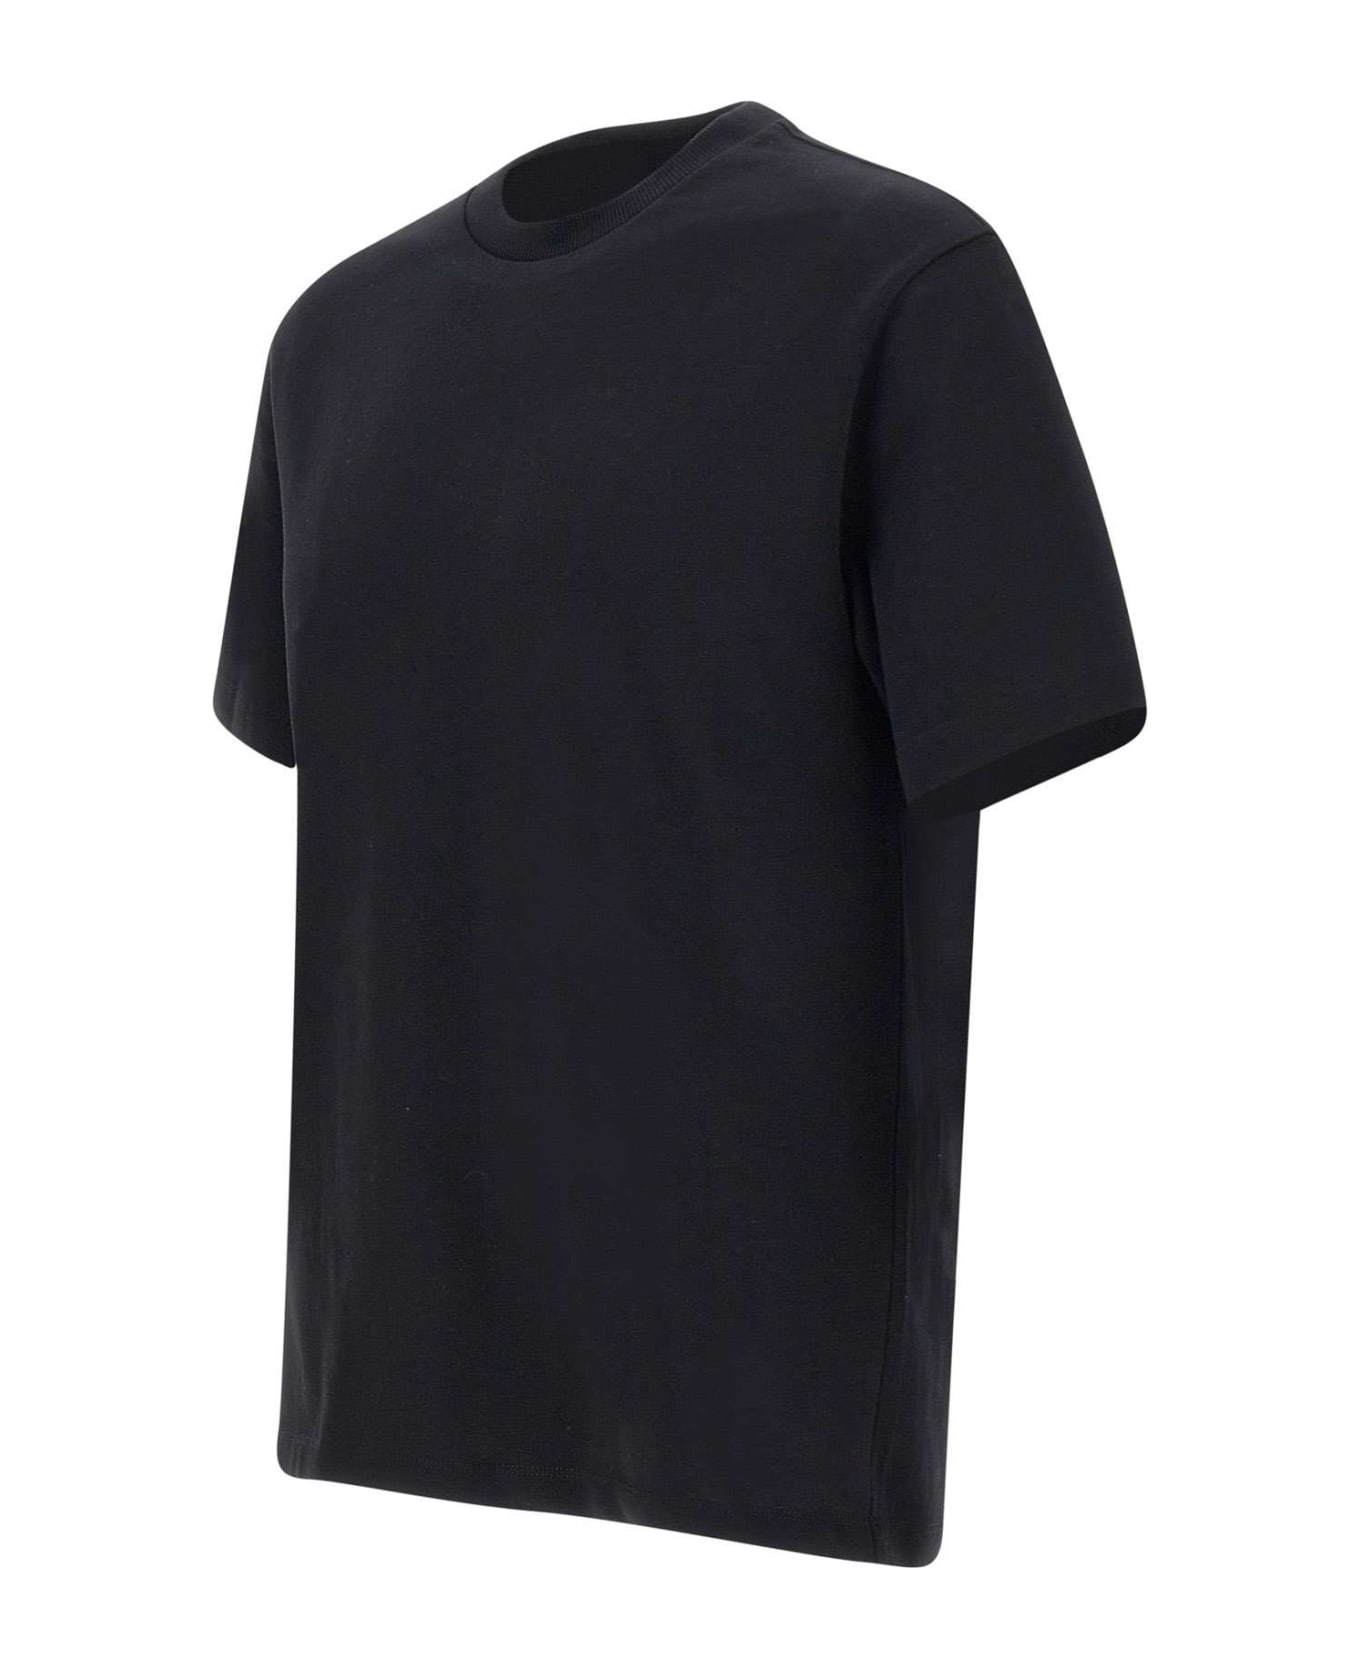 Emporio Armani Cotton T-shirt - BLACK シャツ